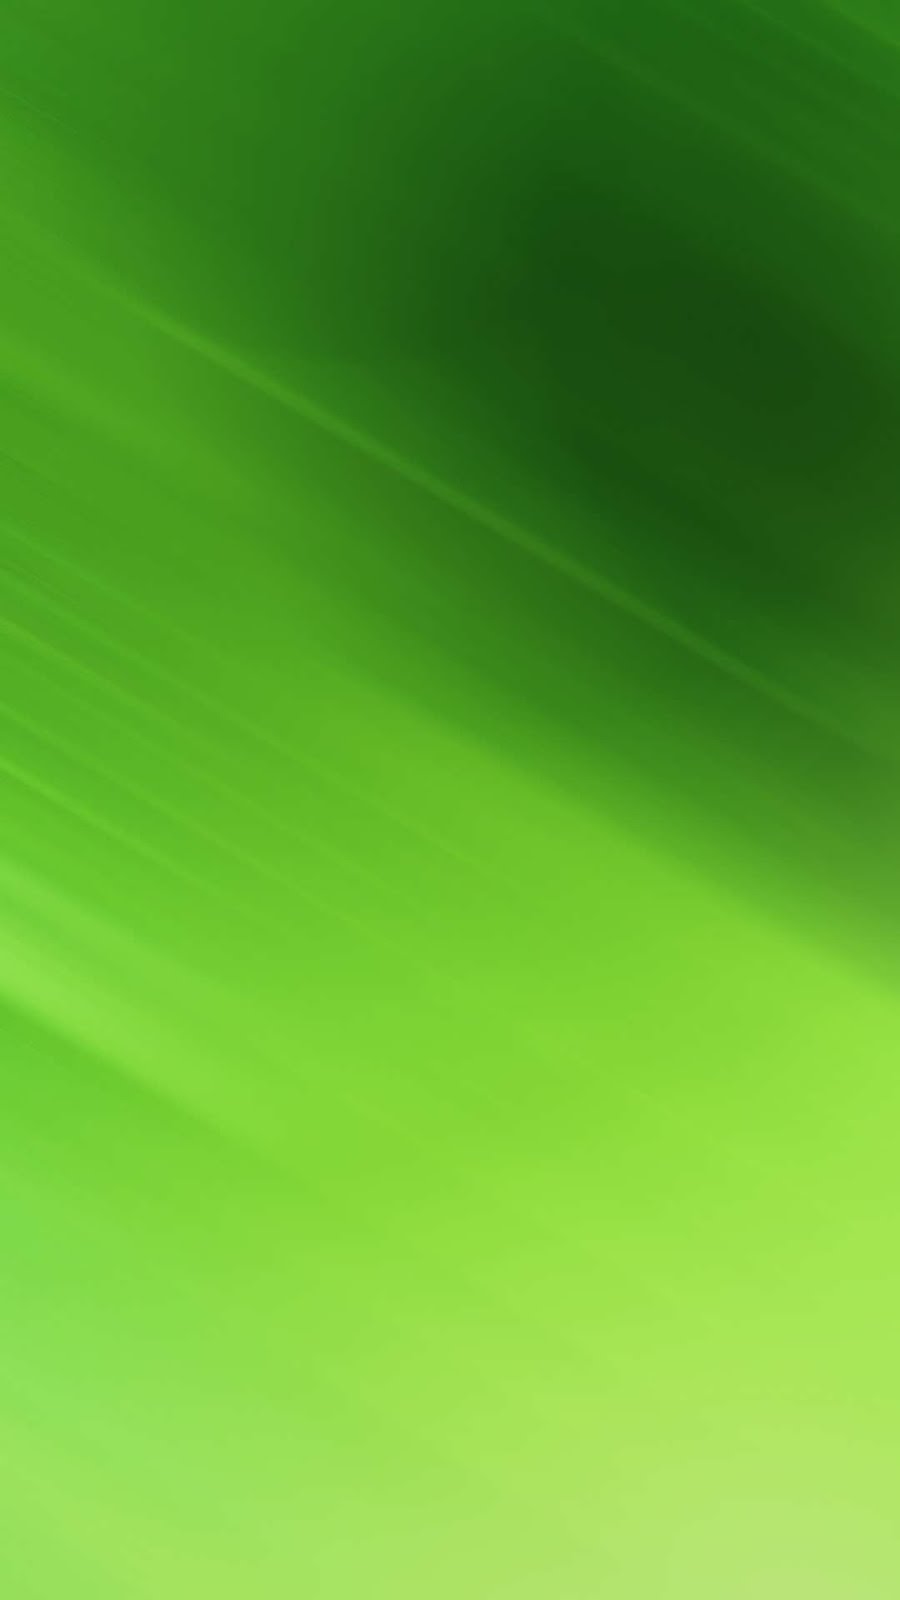 シンプルなグリーン壁紙 Iphone8 Iphonex 壁紙box